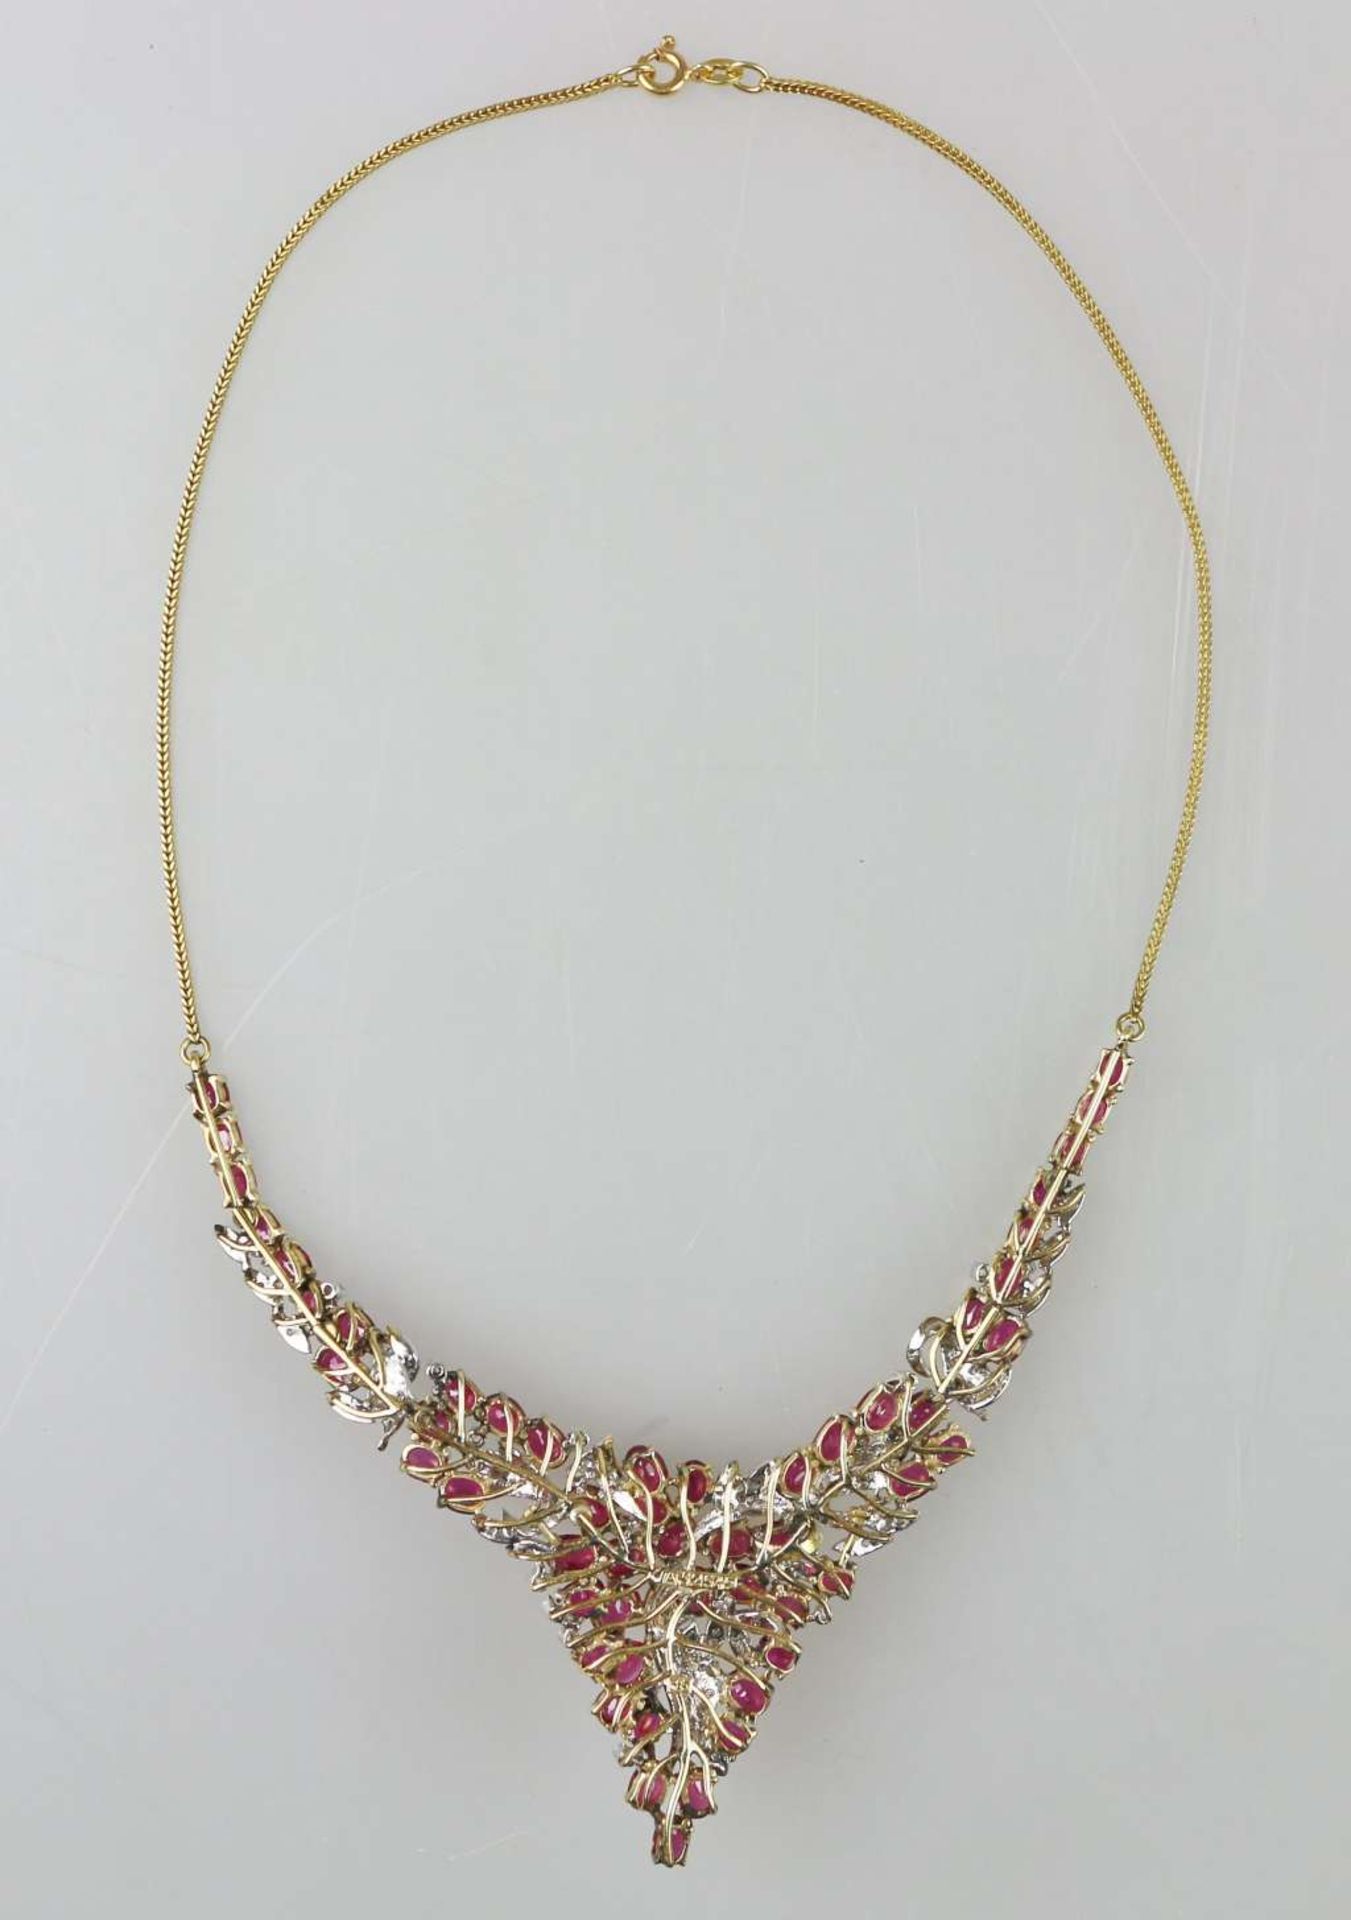 Elegantes Collier mit Rubinen und Brillanten, 585er Gold. - Bild 3 aus 4